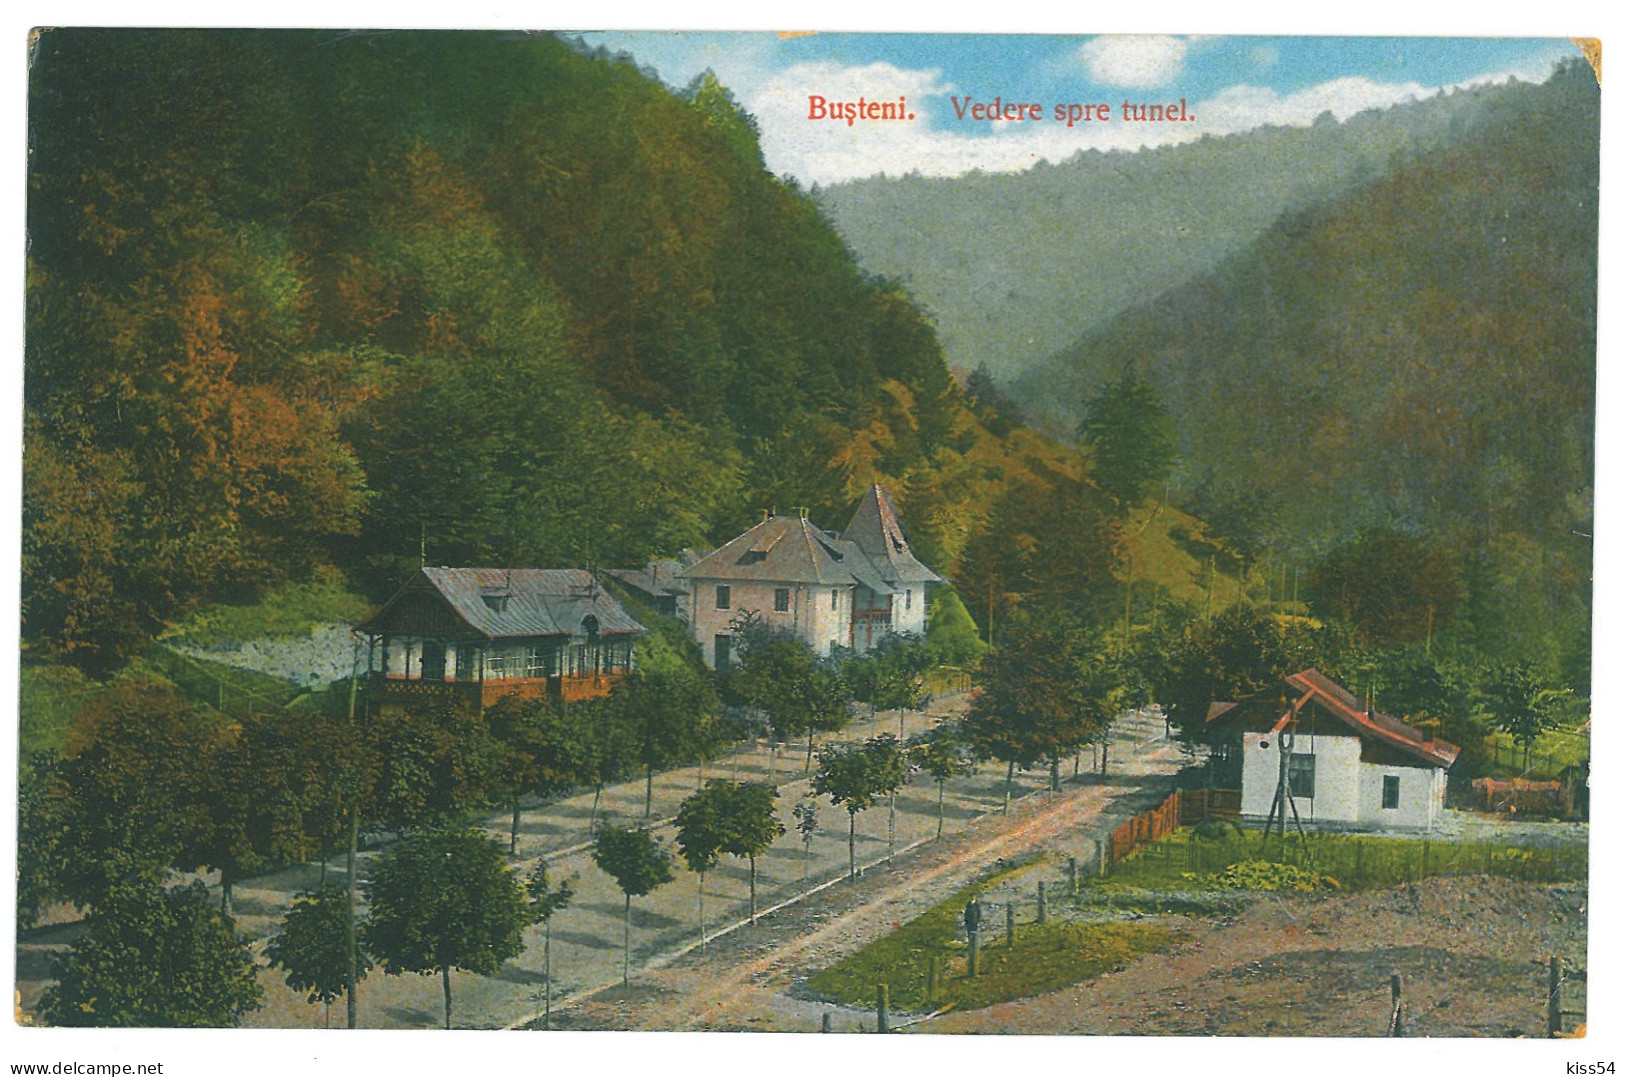 RO 81 - 22363 BUSTENI, Prahova, Romania - Old Postcard - Unused - Rumania